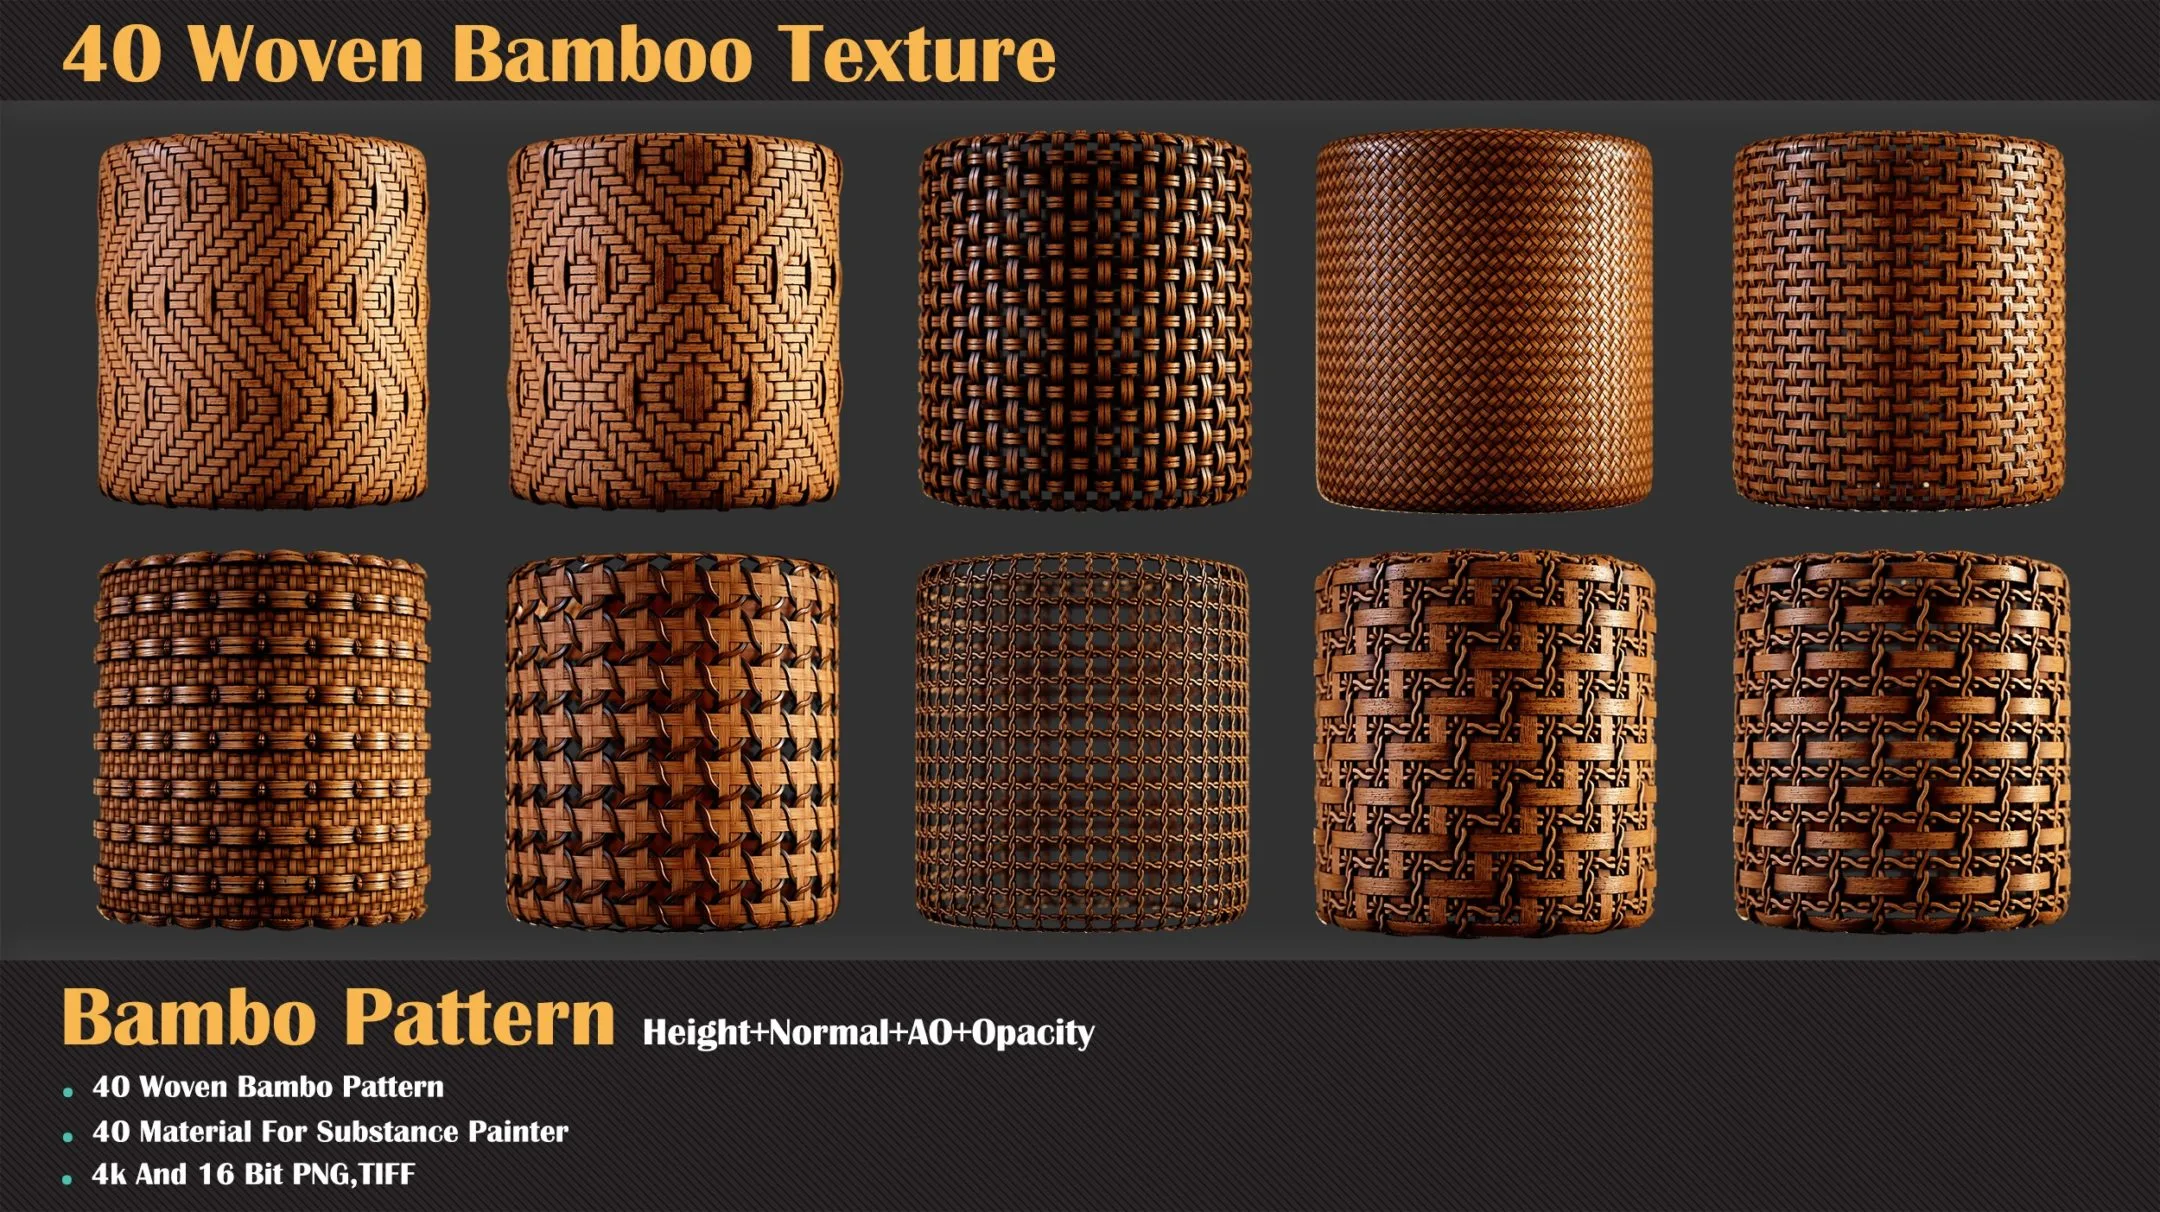 40 Woven Bamboo Texture